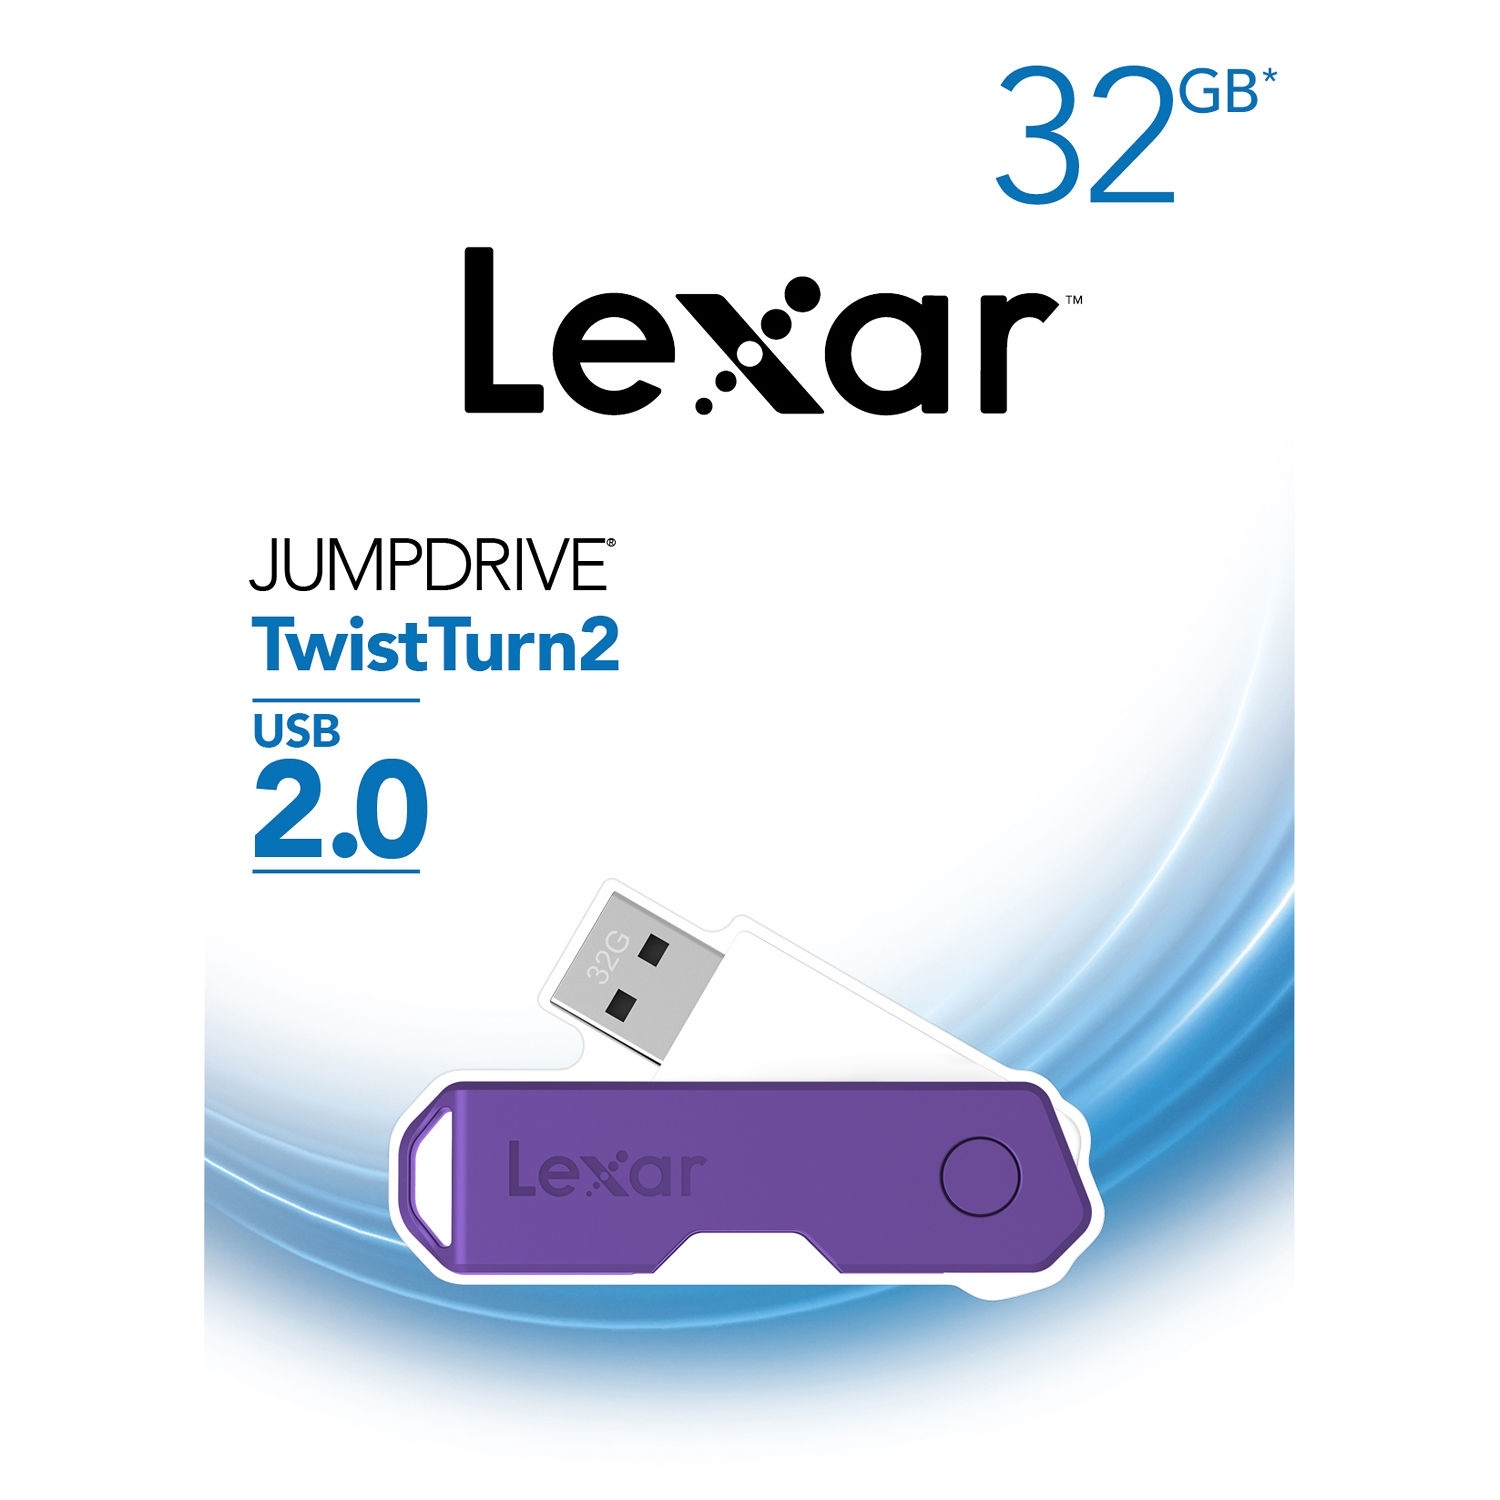 Lexar 32GB JumpDrive TwistTurn2 USB Flash Drive (Purple)